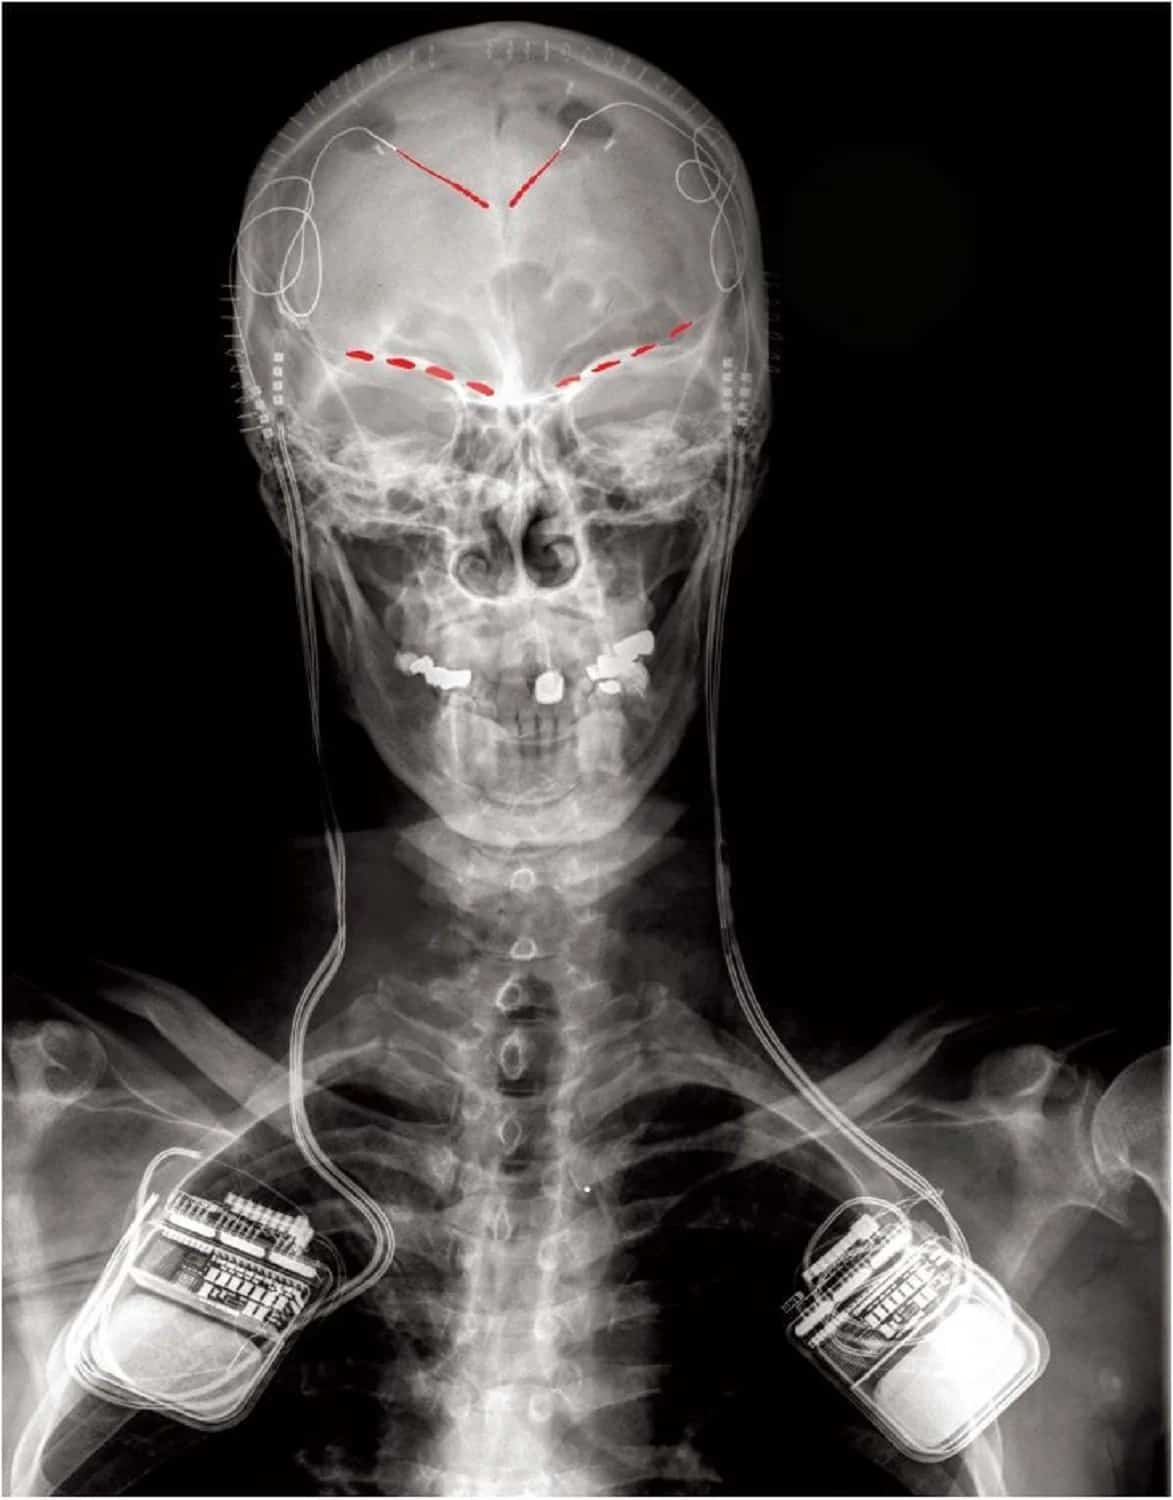 (هذه العلامات هي درجات شدّة الألم) صورة أمامية بالأشعة السينية لأحد المشاركين في الدراسة، تُظهر الأقطاب المزروعة لتسجيل النشاط الدماغي (البقع باللون الأحمر) المتصلة بأجهزة تحفيز الدماغ وتسجيل نشاطه ثنائية الاتجاه المزروعة على كلا الجانبين. براساد شيرفالكار